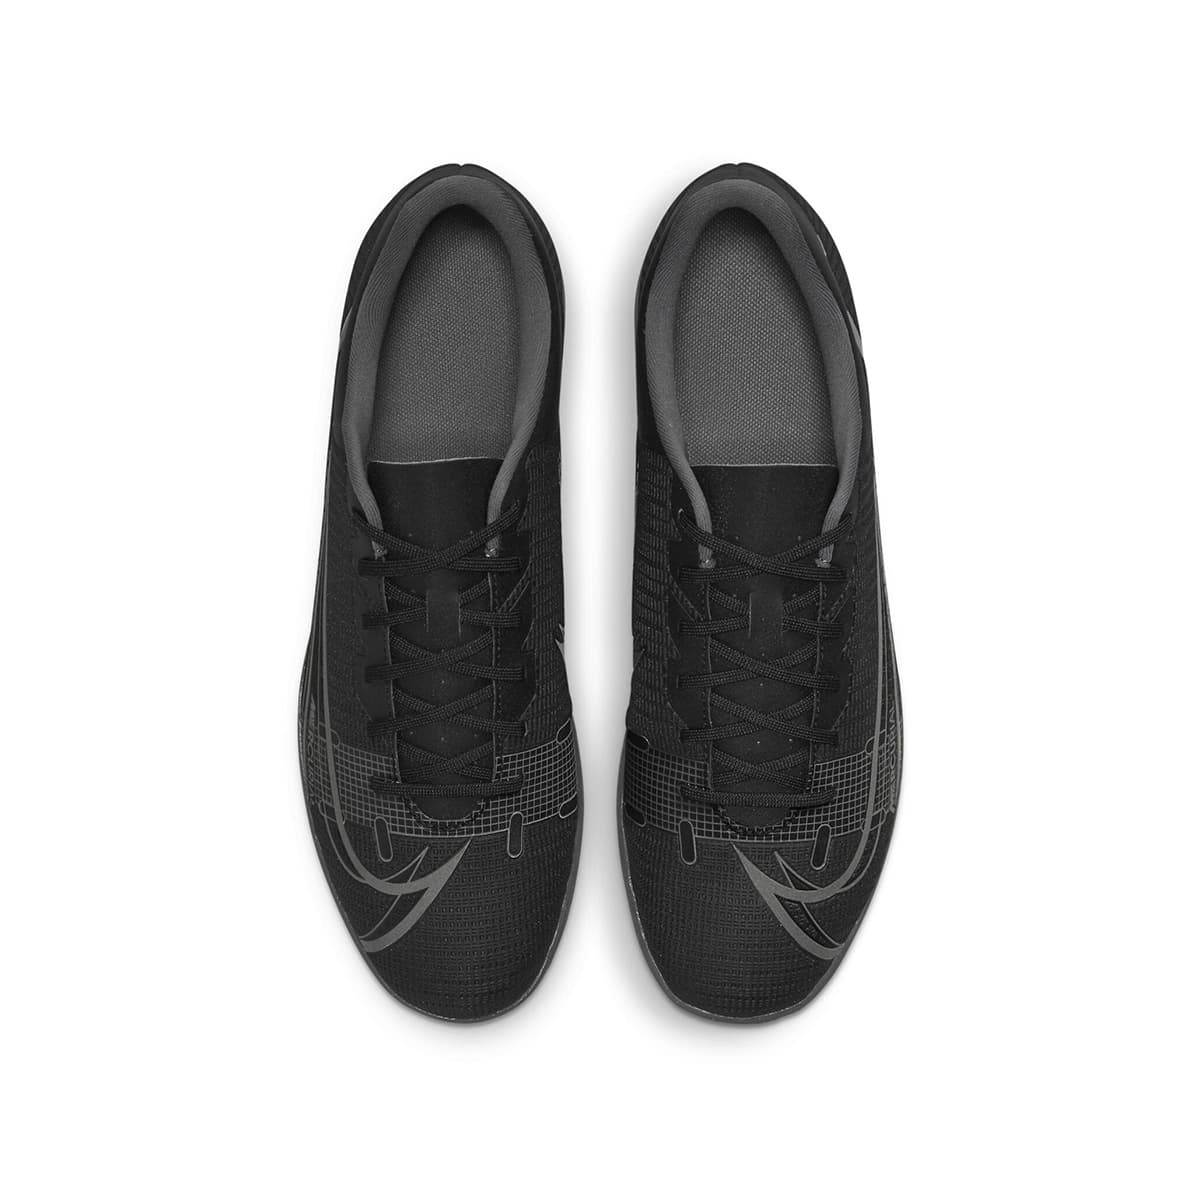 Nike Mercurial Vapor 14 Club Halı Saha Ayakkabısı (CV0980-004)